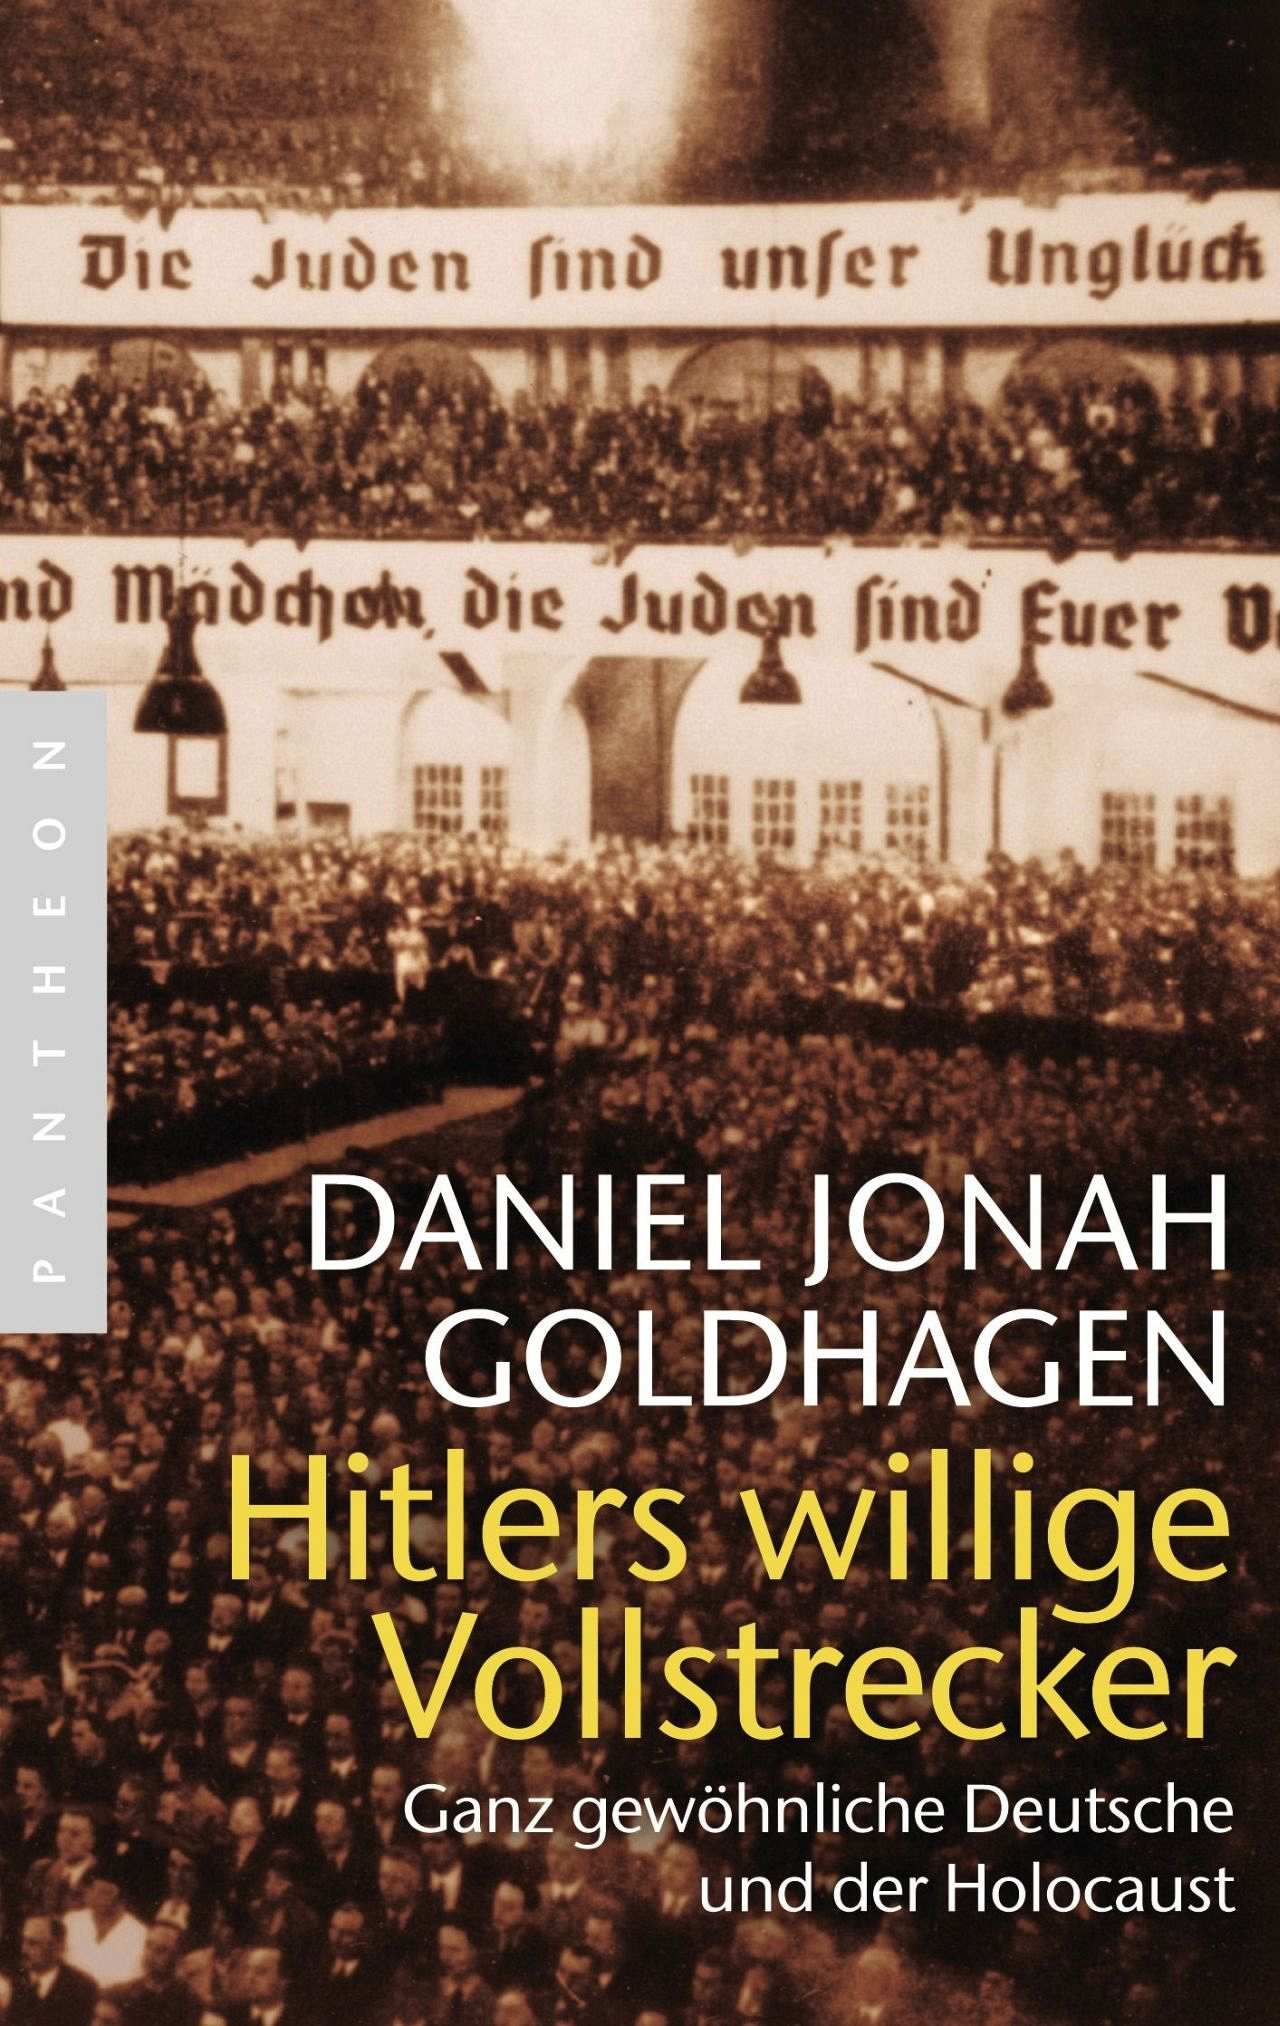 Buchcover: Daniel Jonah Goldhagen: Hitlers willige Vollstrecker. Ganz gewöhnliche Deutsche und der Holocaust.